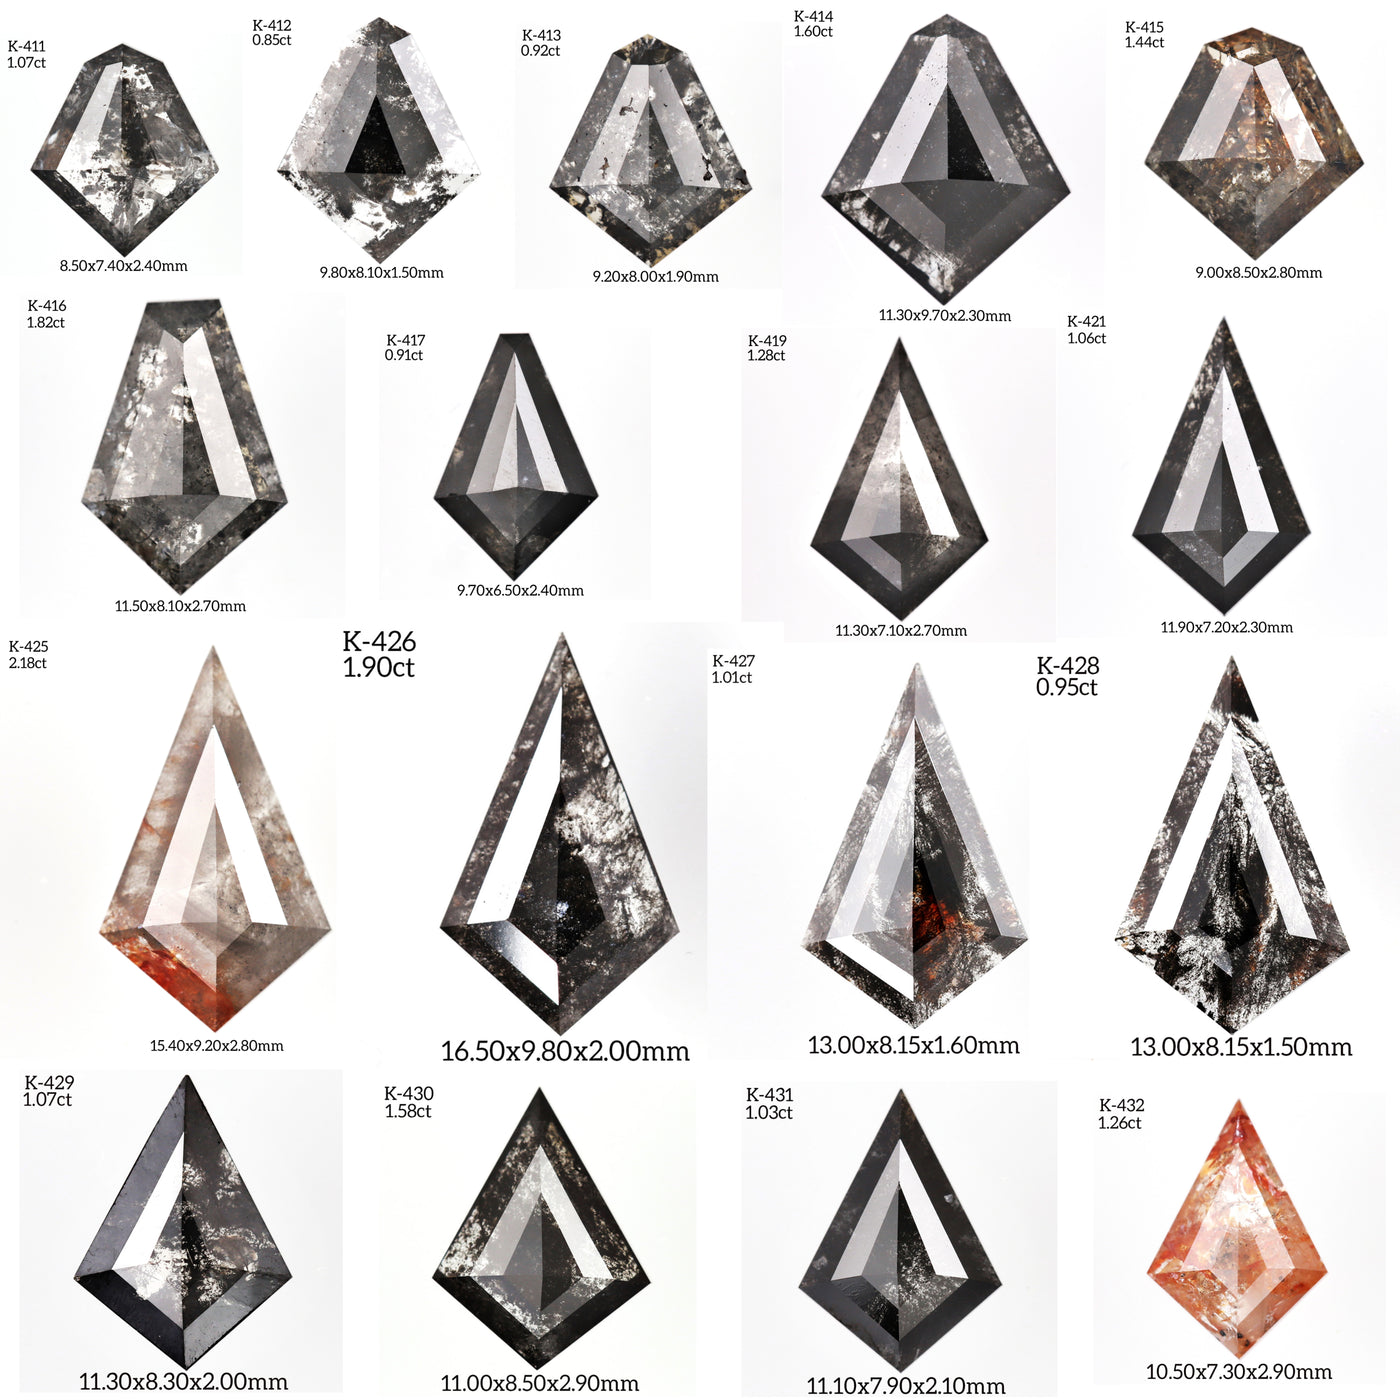 K432 - Salt and pepper kite diamond